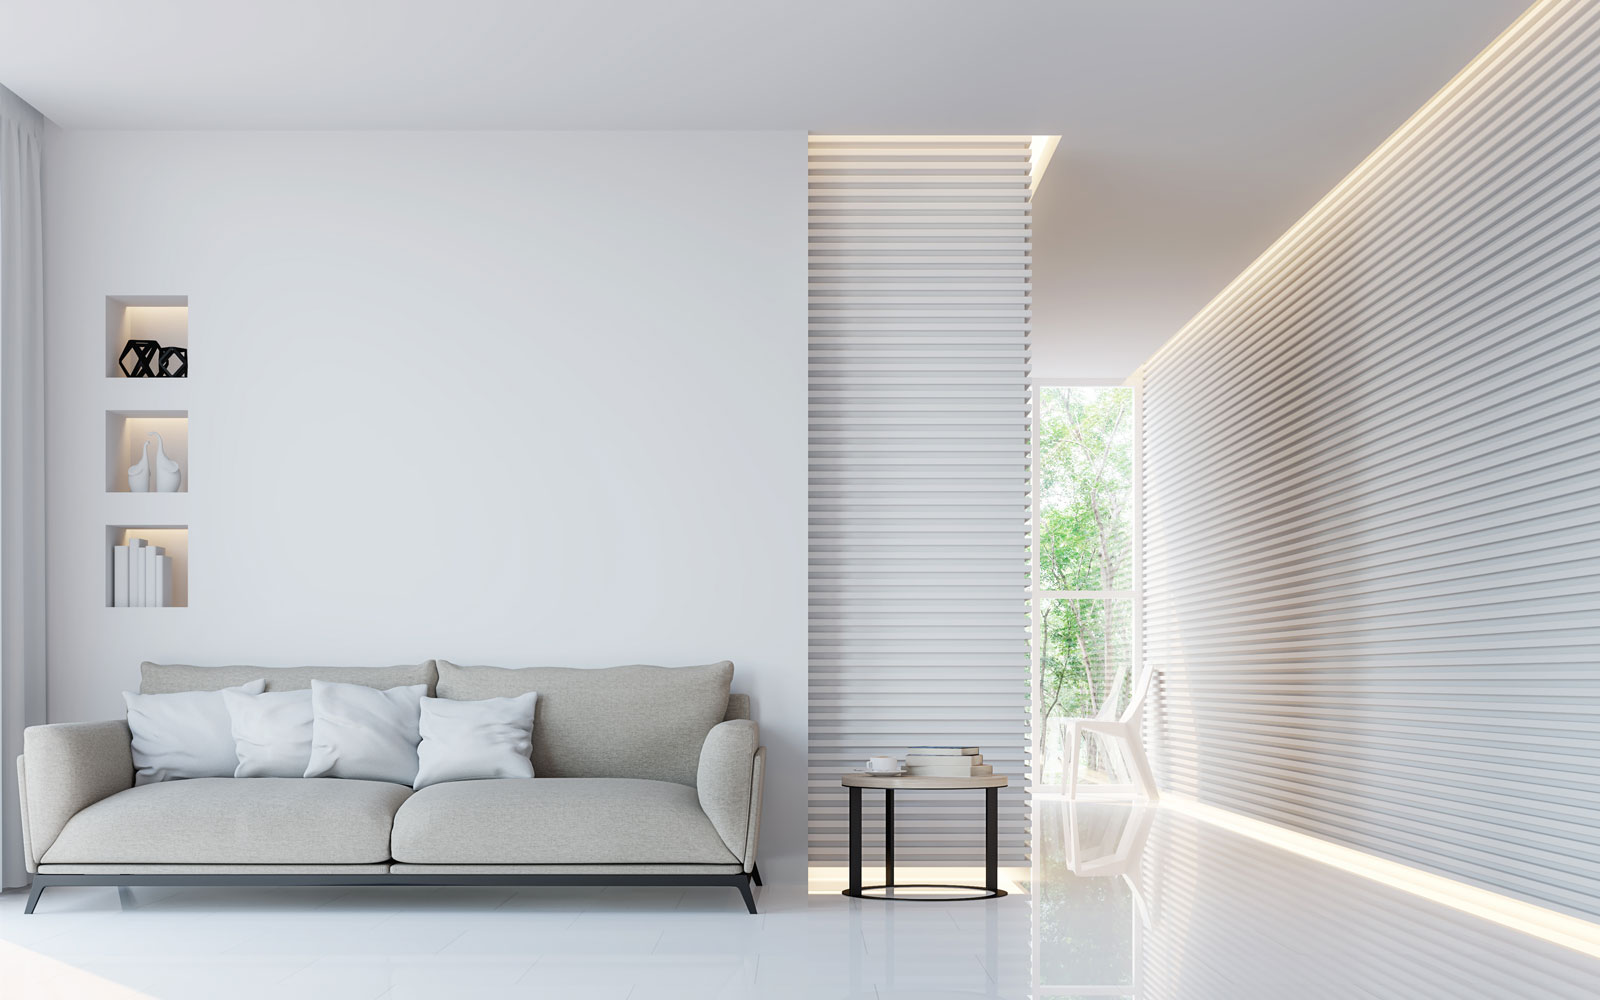 5 dicas para decoração em drywall: conheça essas sugestões para deixar o espaço ainda mais bonito